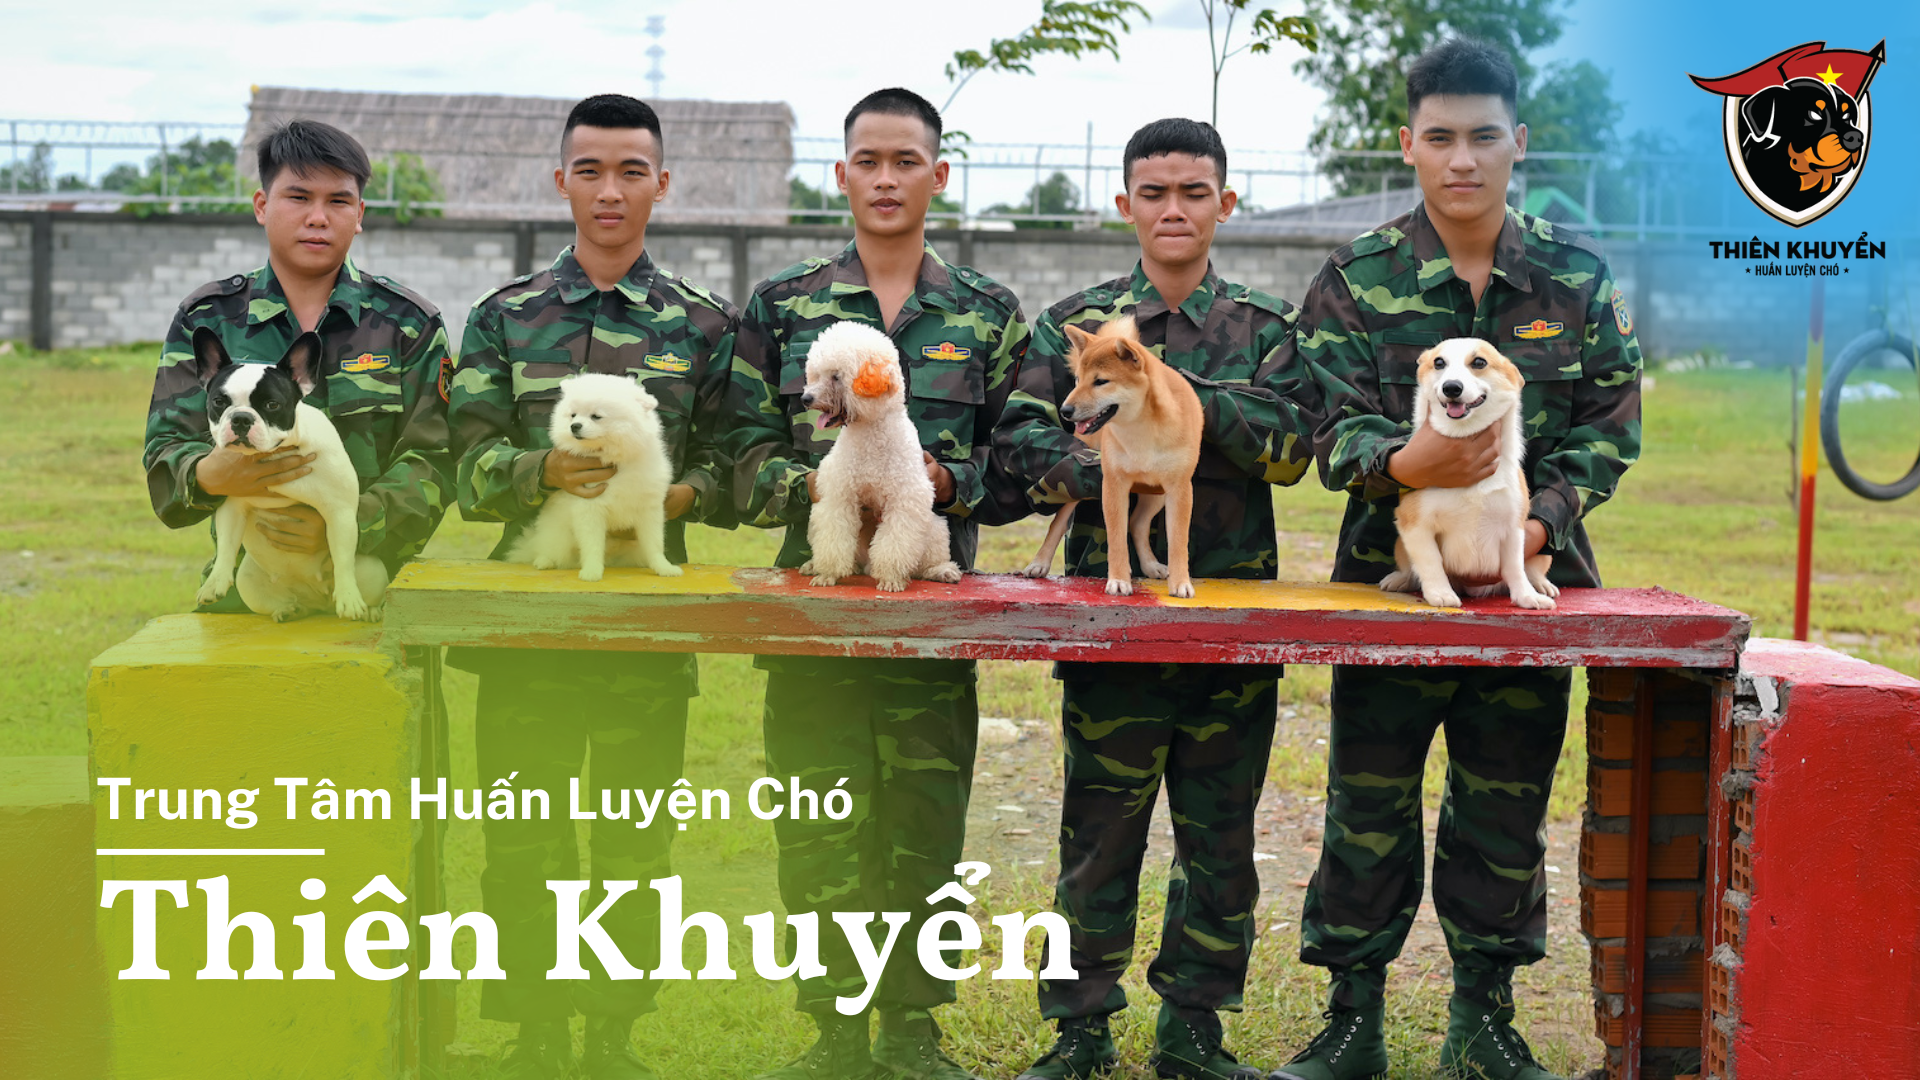 Thien Khuyen dog training cente